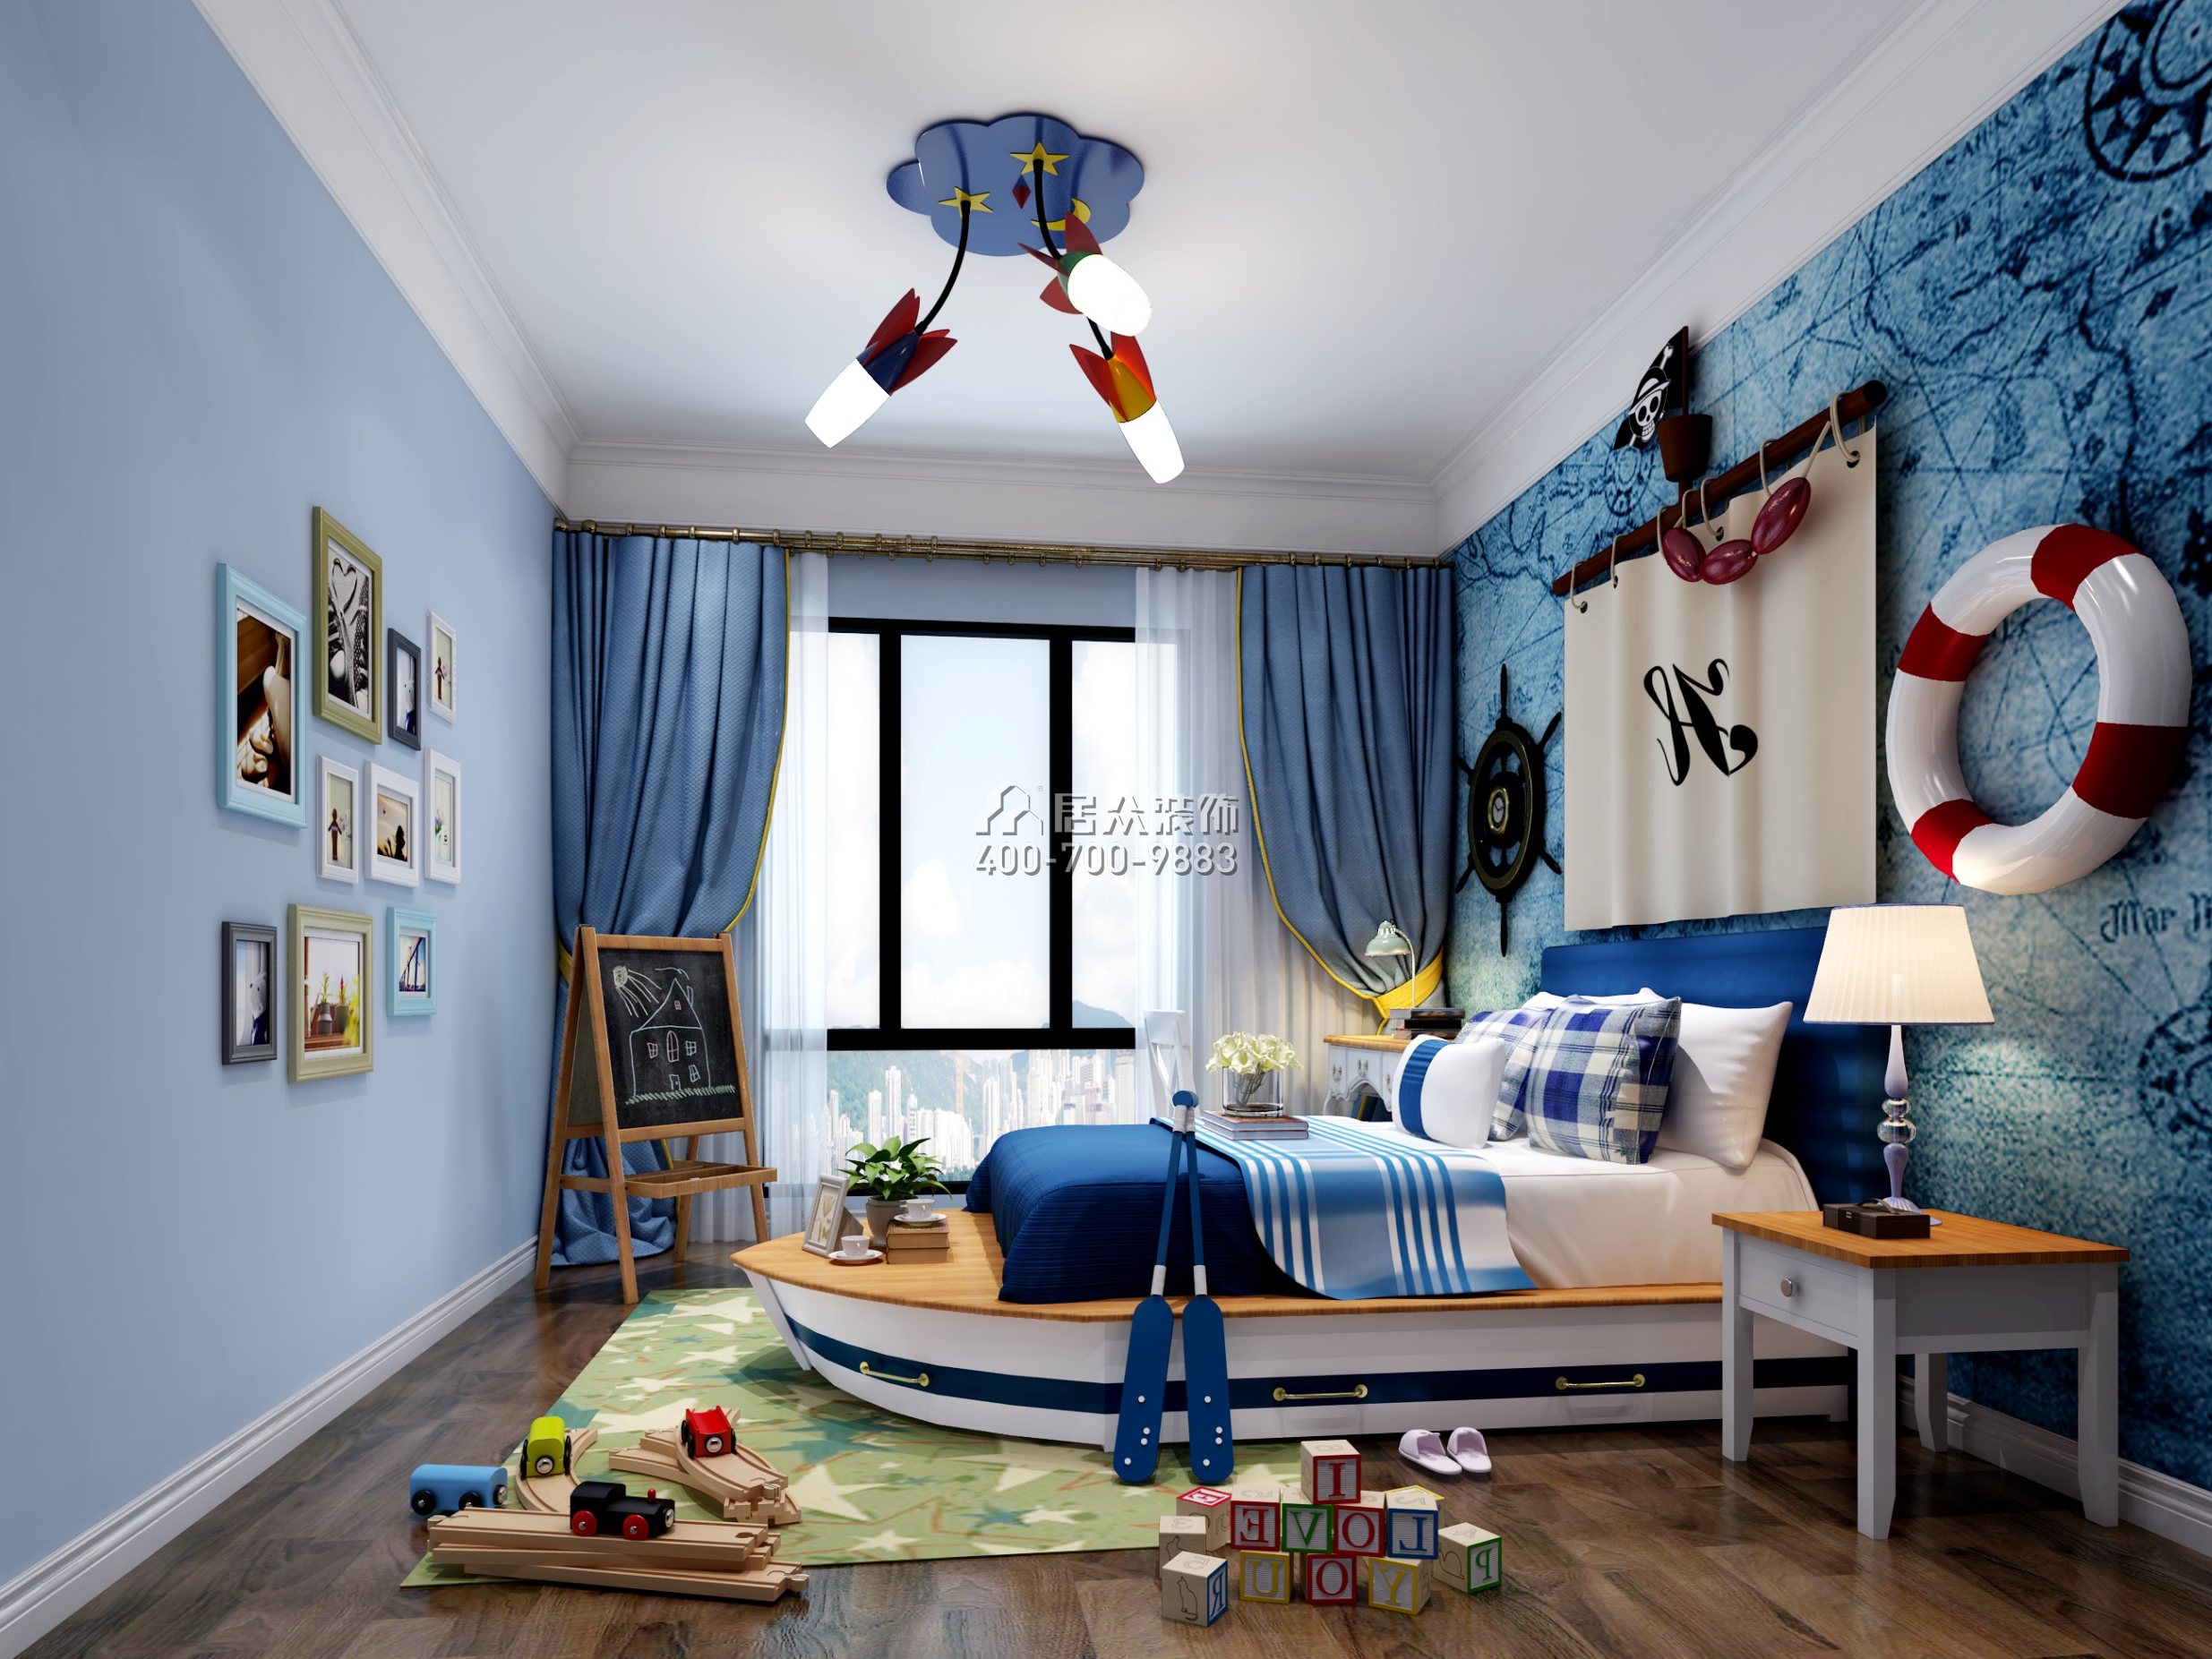 傳麒尚林400平方米歐式風格別墅戶型兒童房裝修效果圖